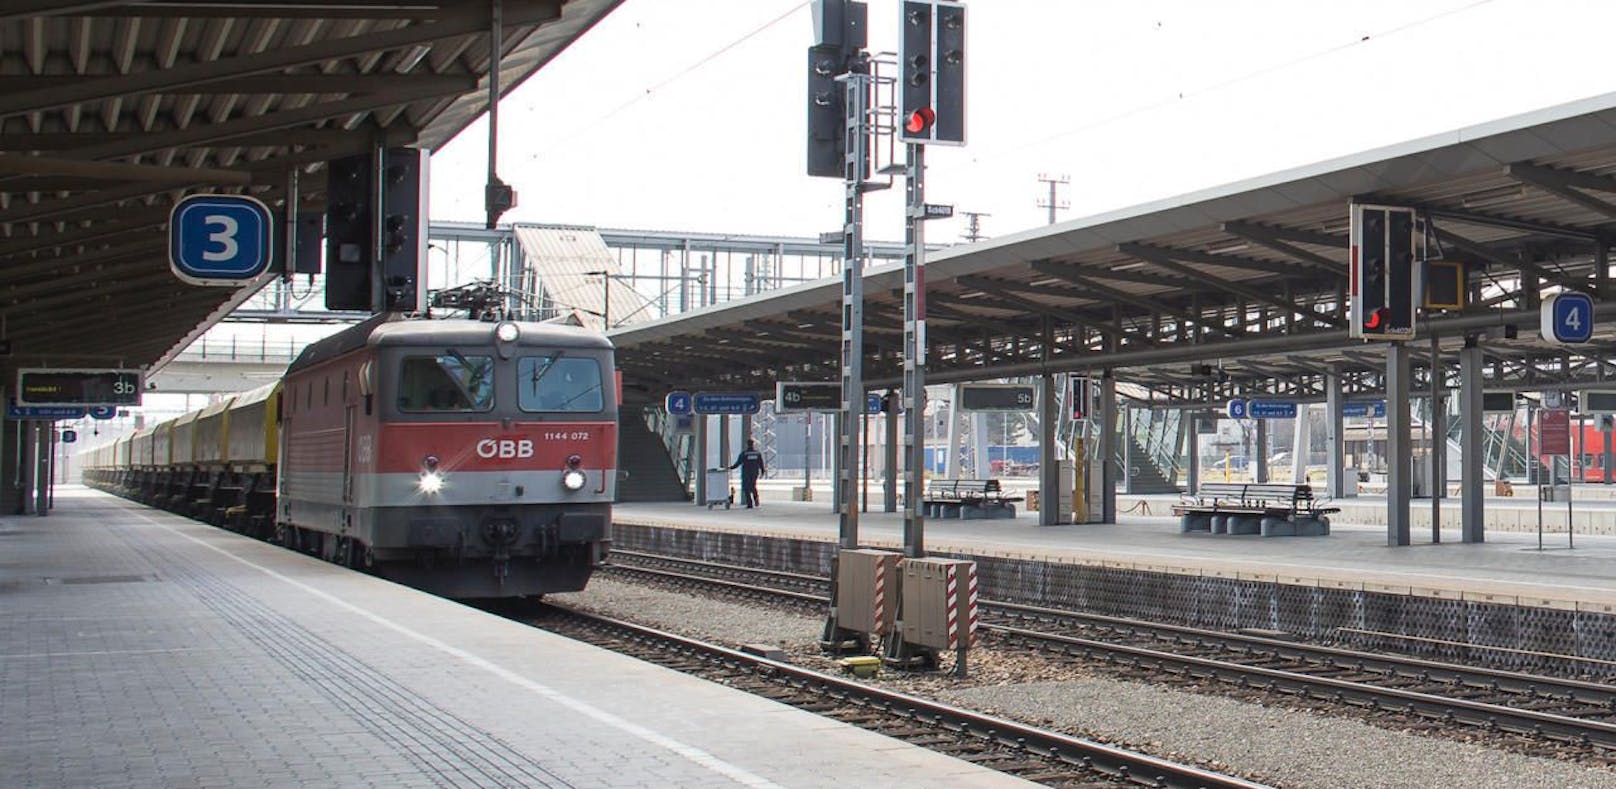 Der Bahnhof in Wr. Neustadt: Die Stadt liegt in der VCÖ-Öffi-Regionsanalyse an der Spitze.